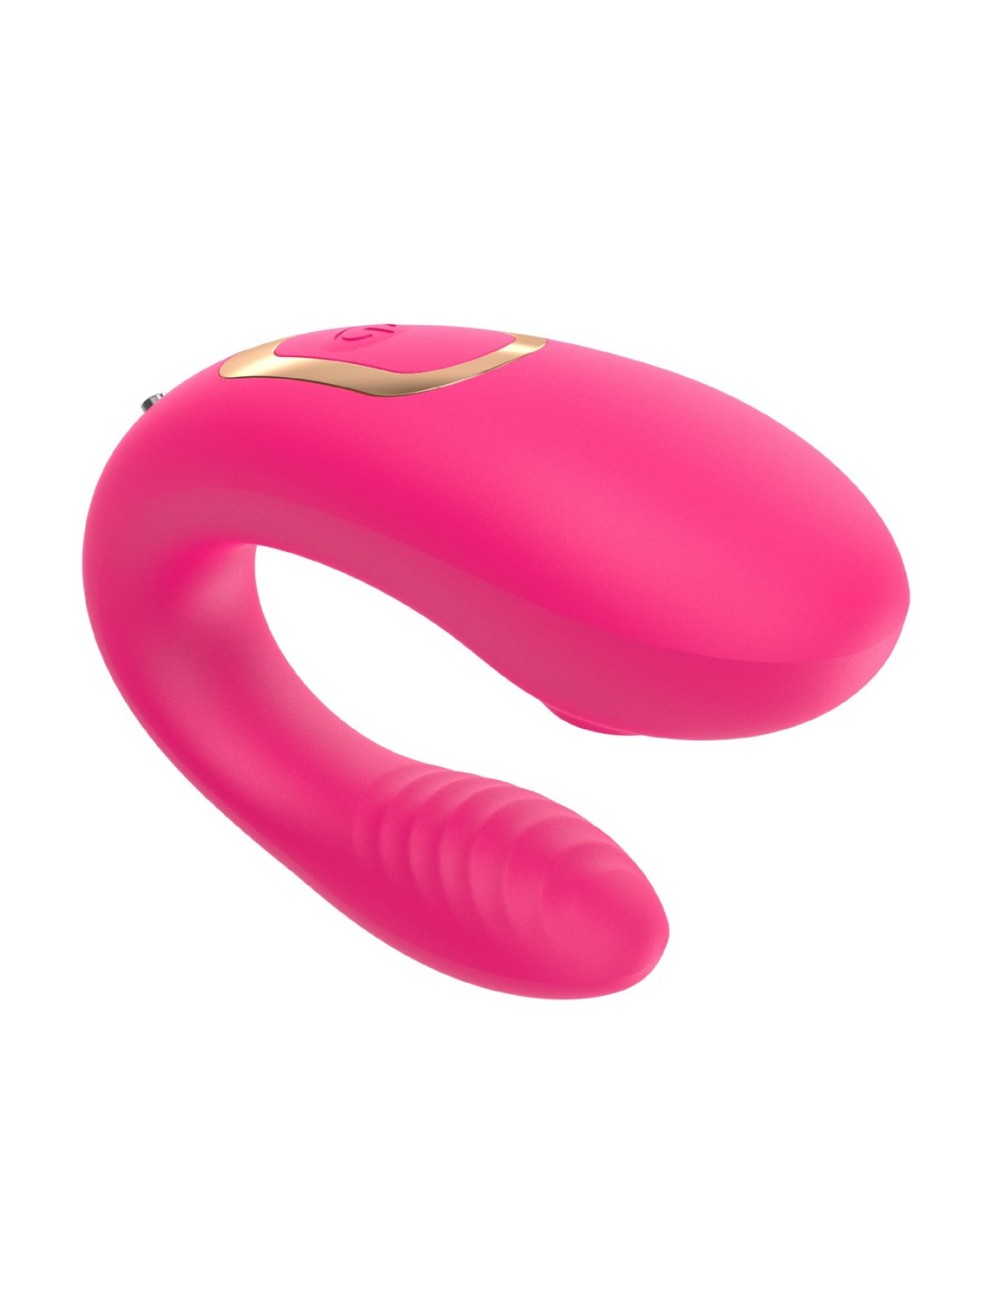 Vibromasseur de couple rose, USB avec 2 moteurs pour stimulation Point G et clitoridienne avec télécommande - TOD-062PNK